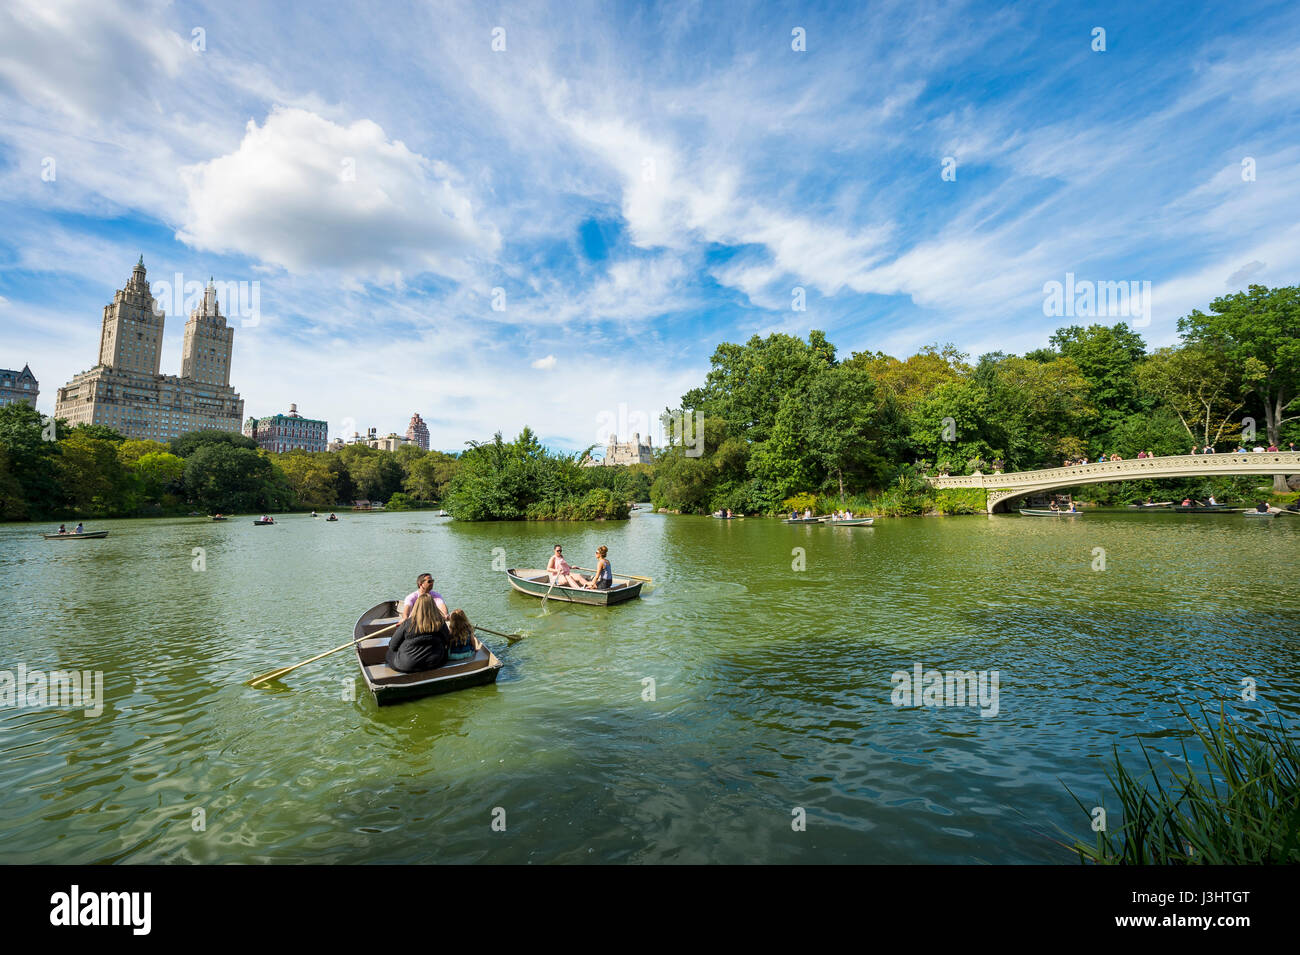 NEW YORK - 3 septembre 2016 : les touristes des bateaux de ligne pour apprécier la vue du célèbre pont bow et Central Park West skyline sur un après-midi d'été Banque D'Images